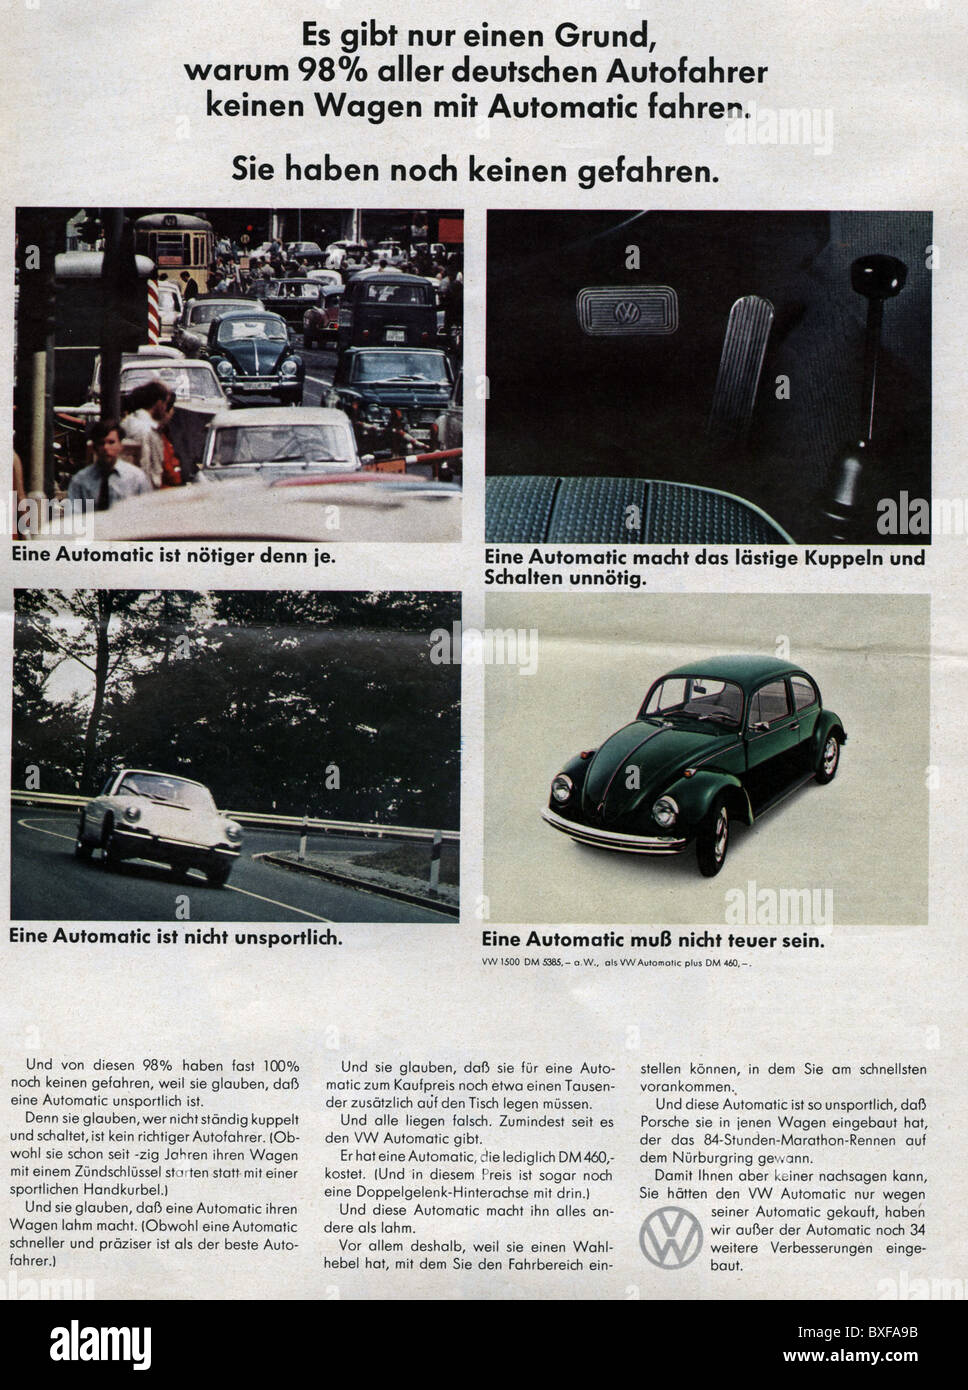 Pubblicità, automobili, Volkswagen Beetle automatico, pubblicità in una rivista, Germania, anni 60, diritti aggiuntivi-clearences-non disponibile Foto Stock